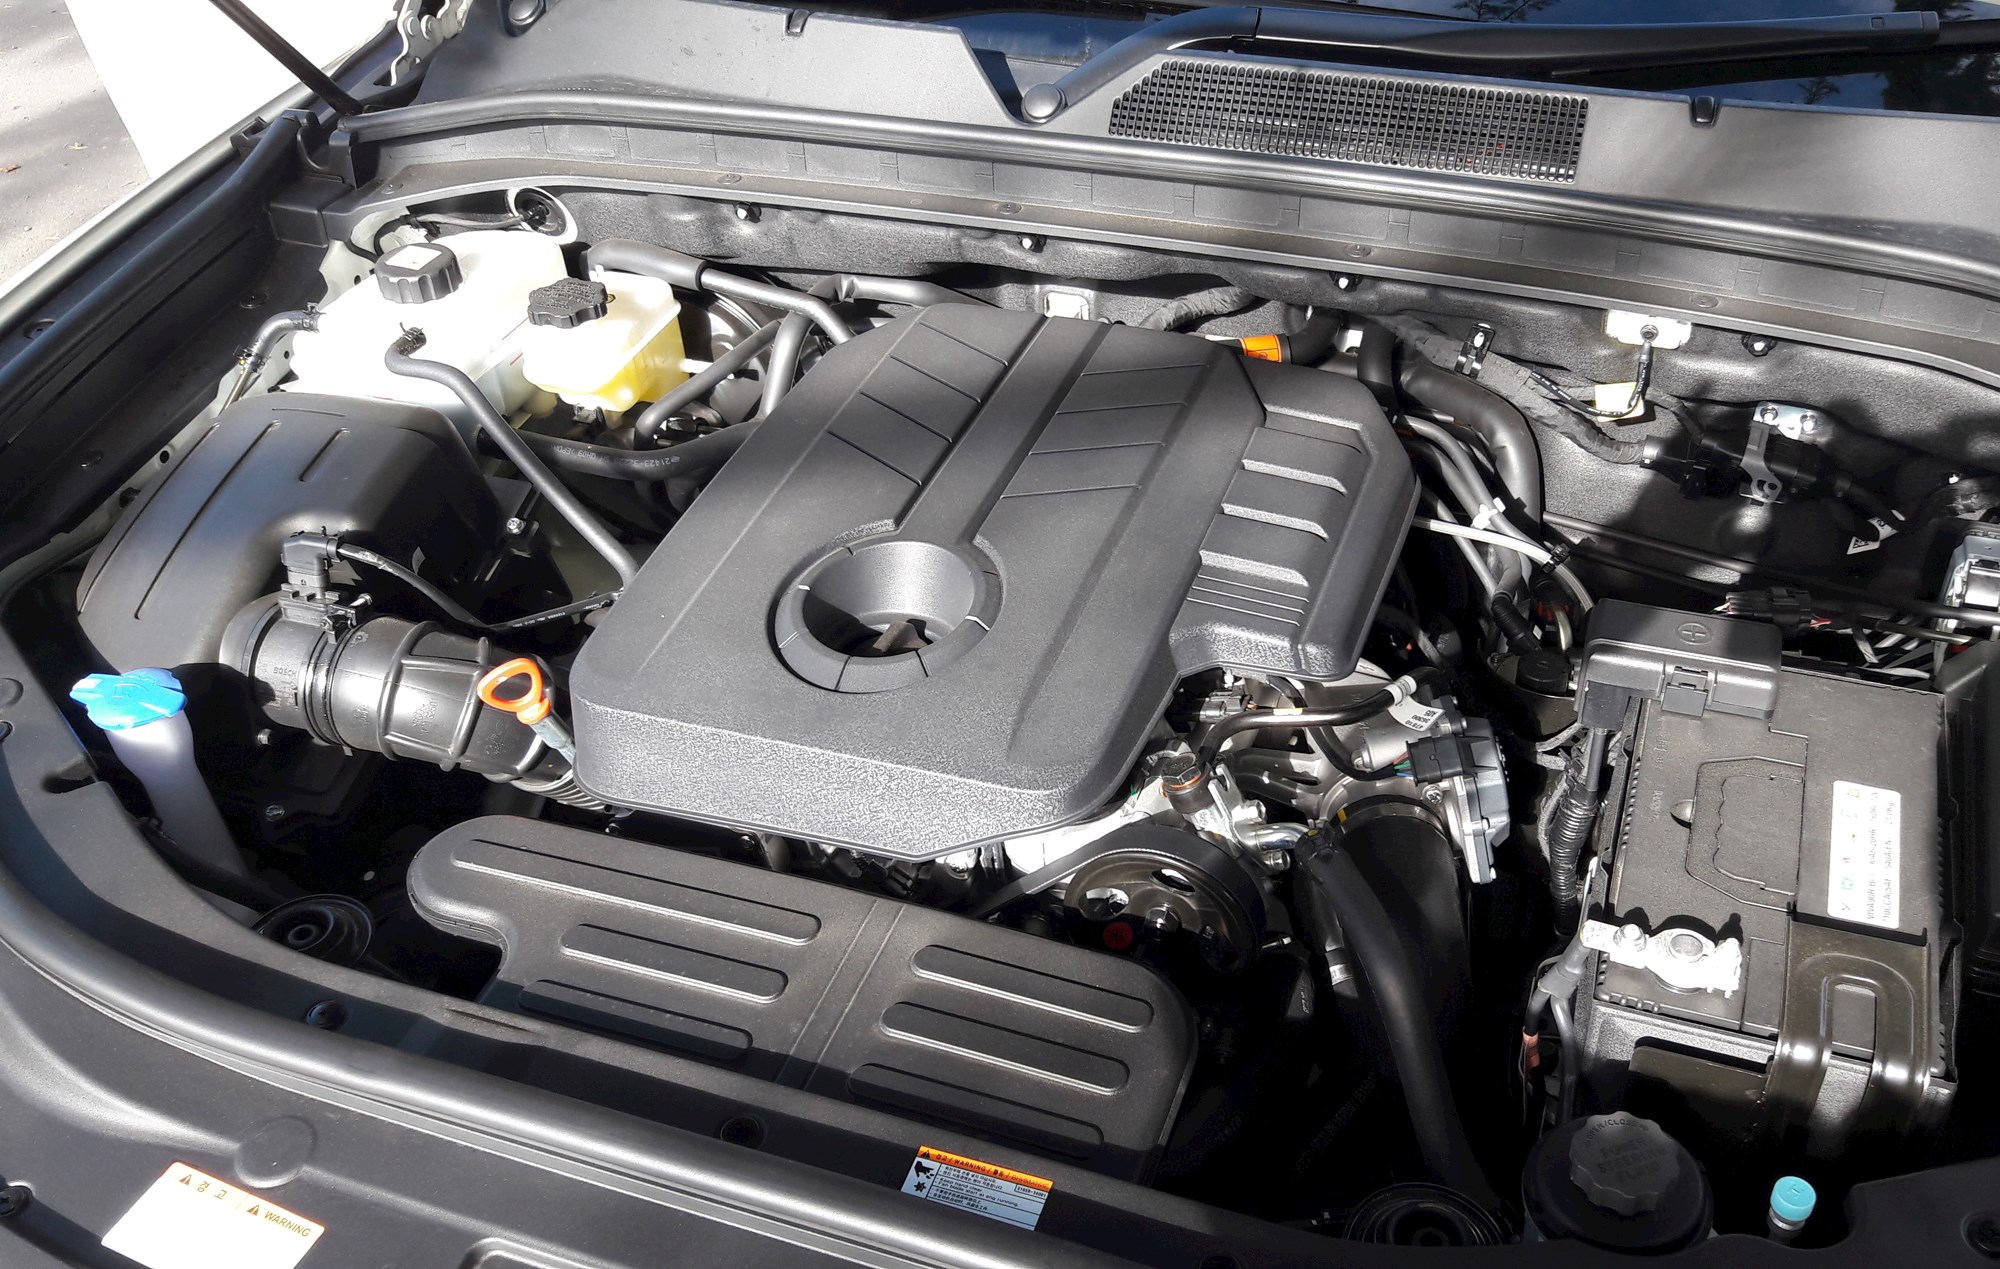 Санг йонг двигатель. Двигатель Санг енг Рекстон 2.7 дизель. SSANGYONG Rexton 4g двигатель. SSANGYONG Rexton g4 2020. SSANGYONG Rexton g4 двигатель дизельный.